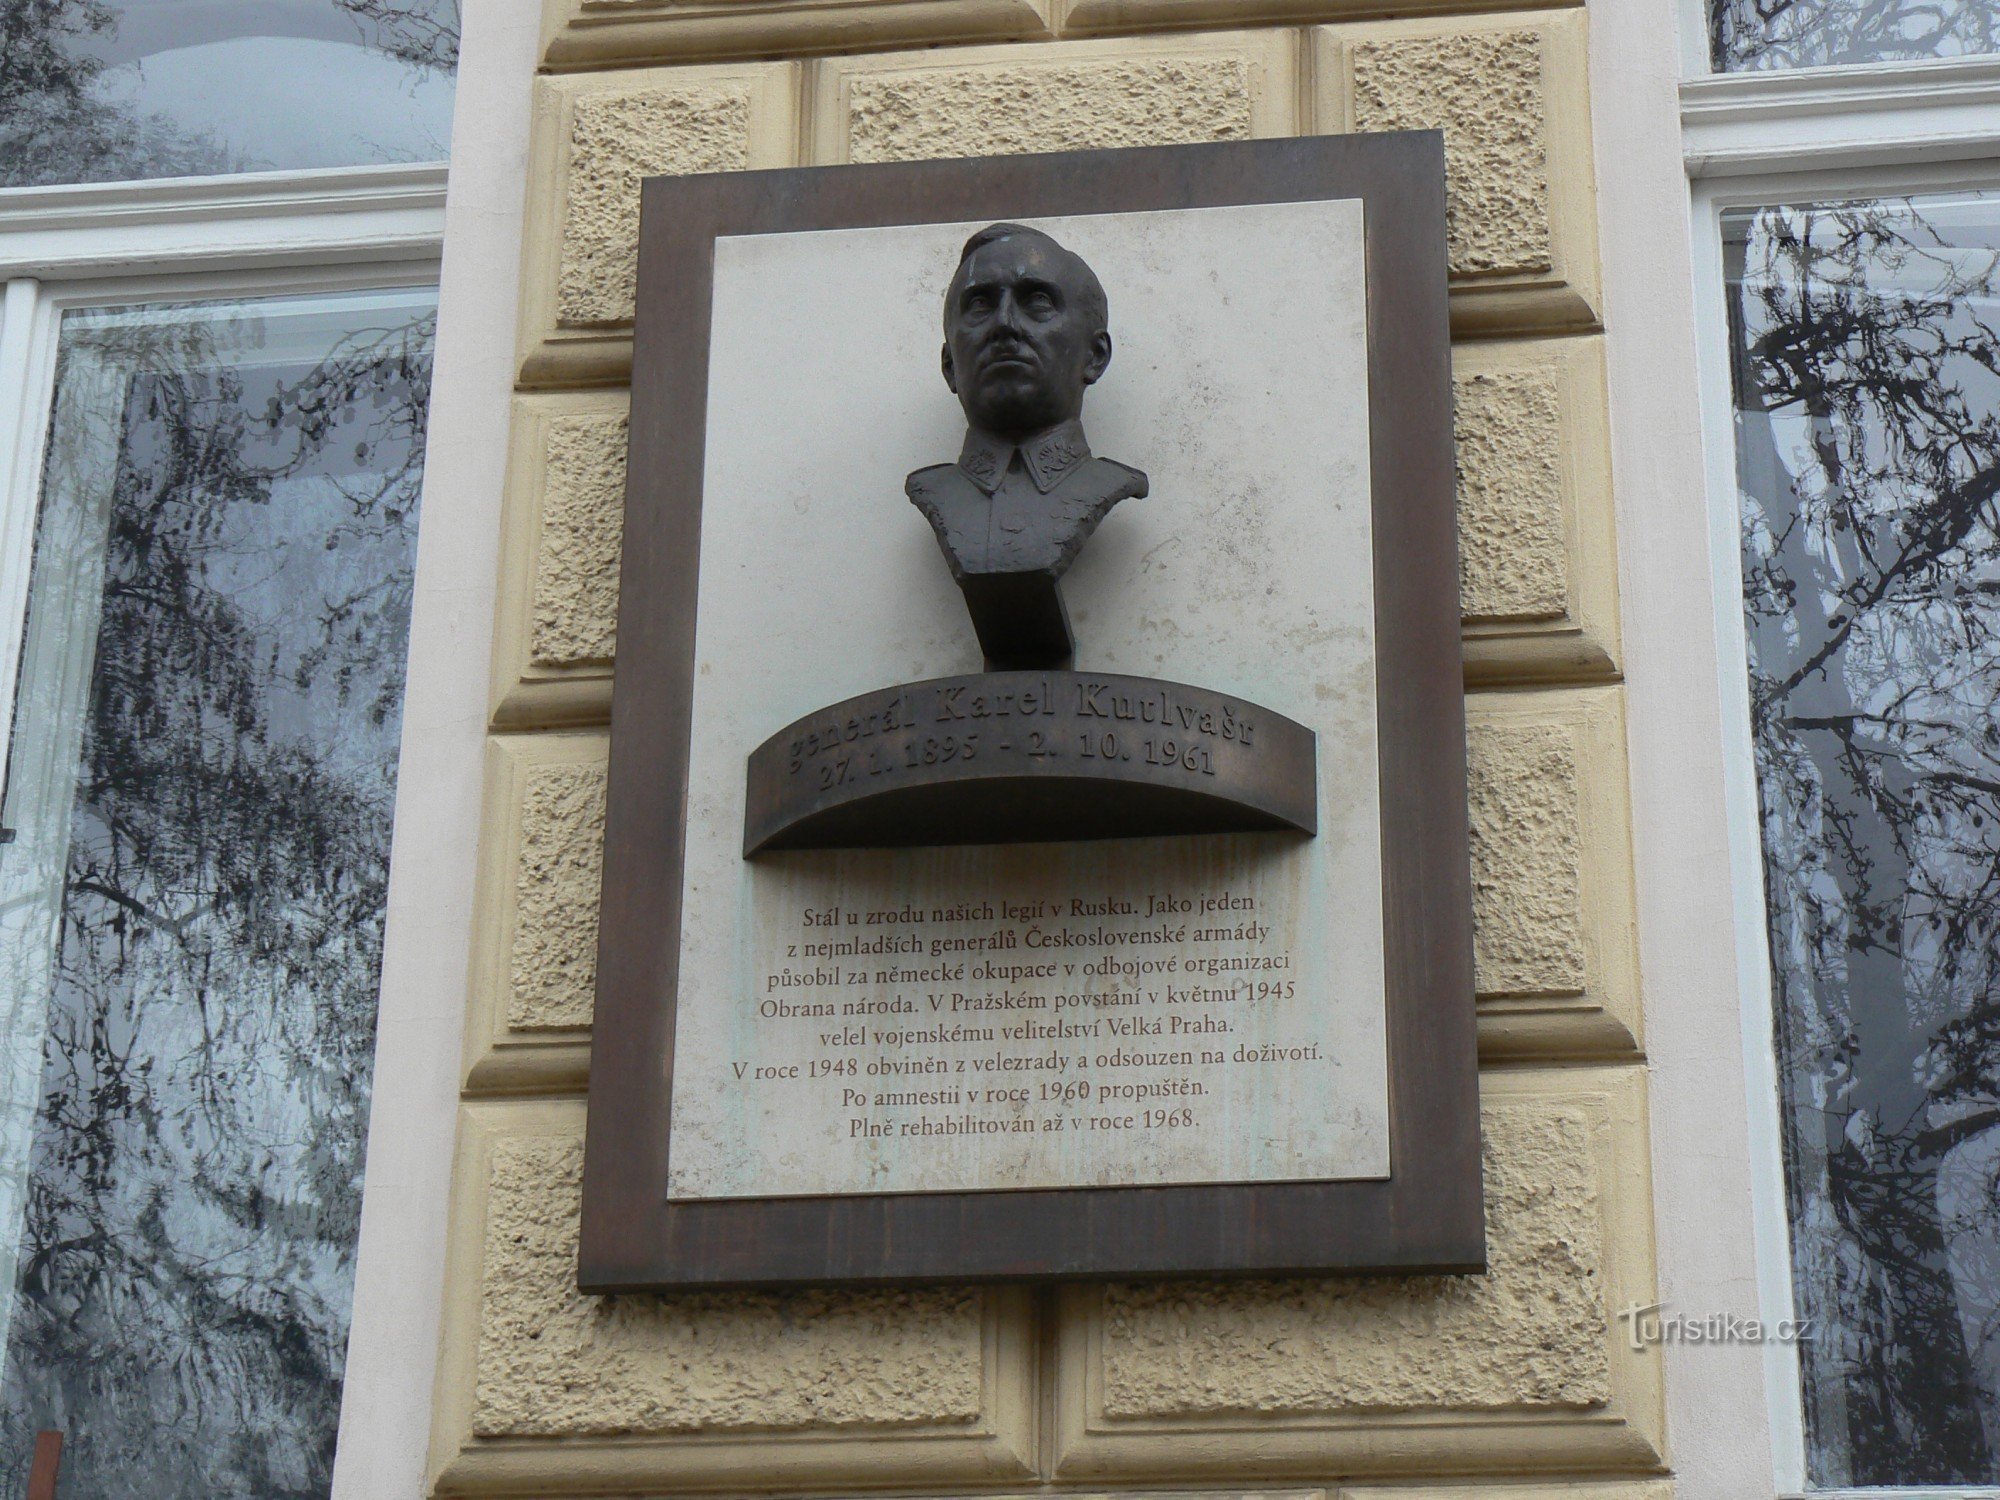 placa memorial ao general Kutlvašr